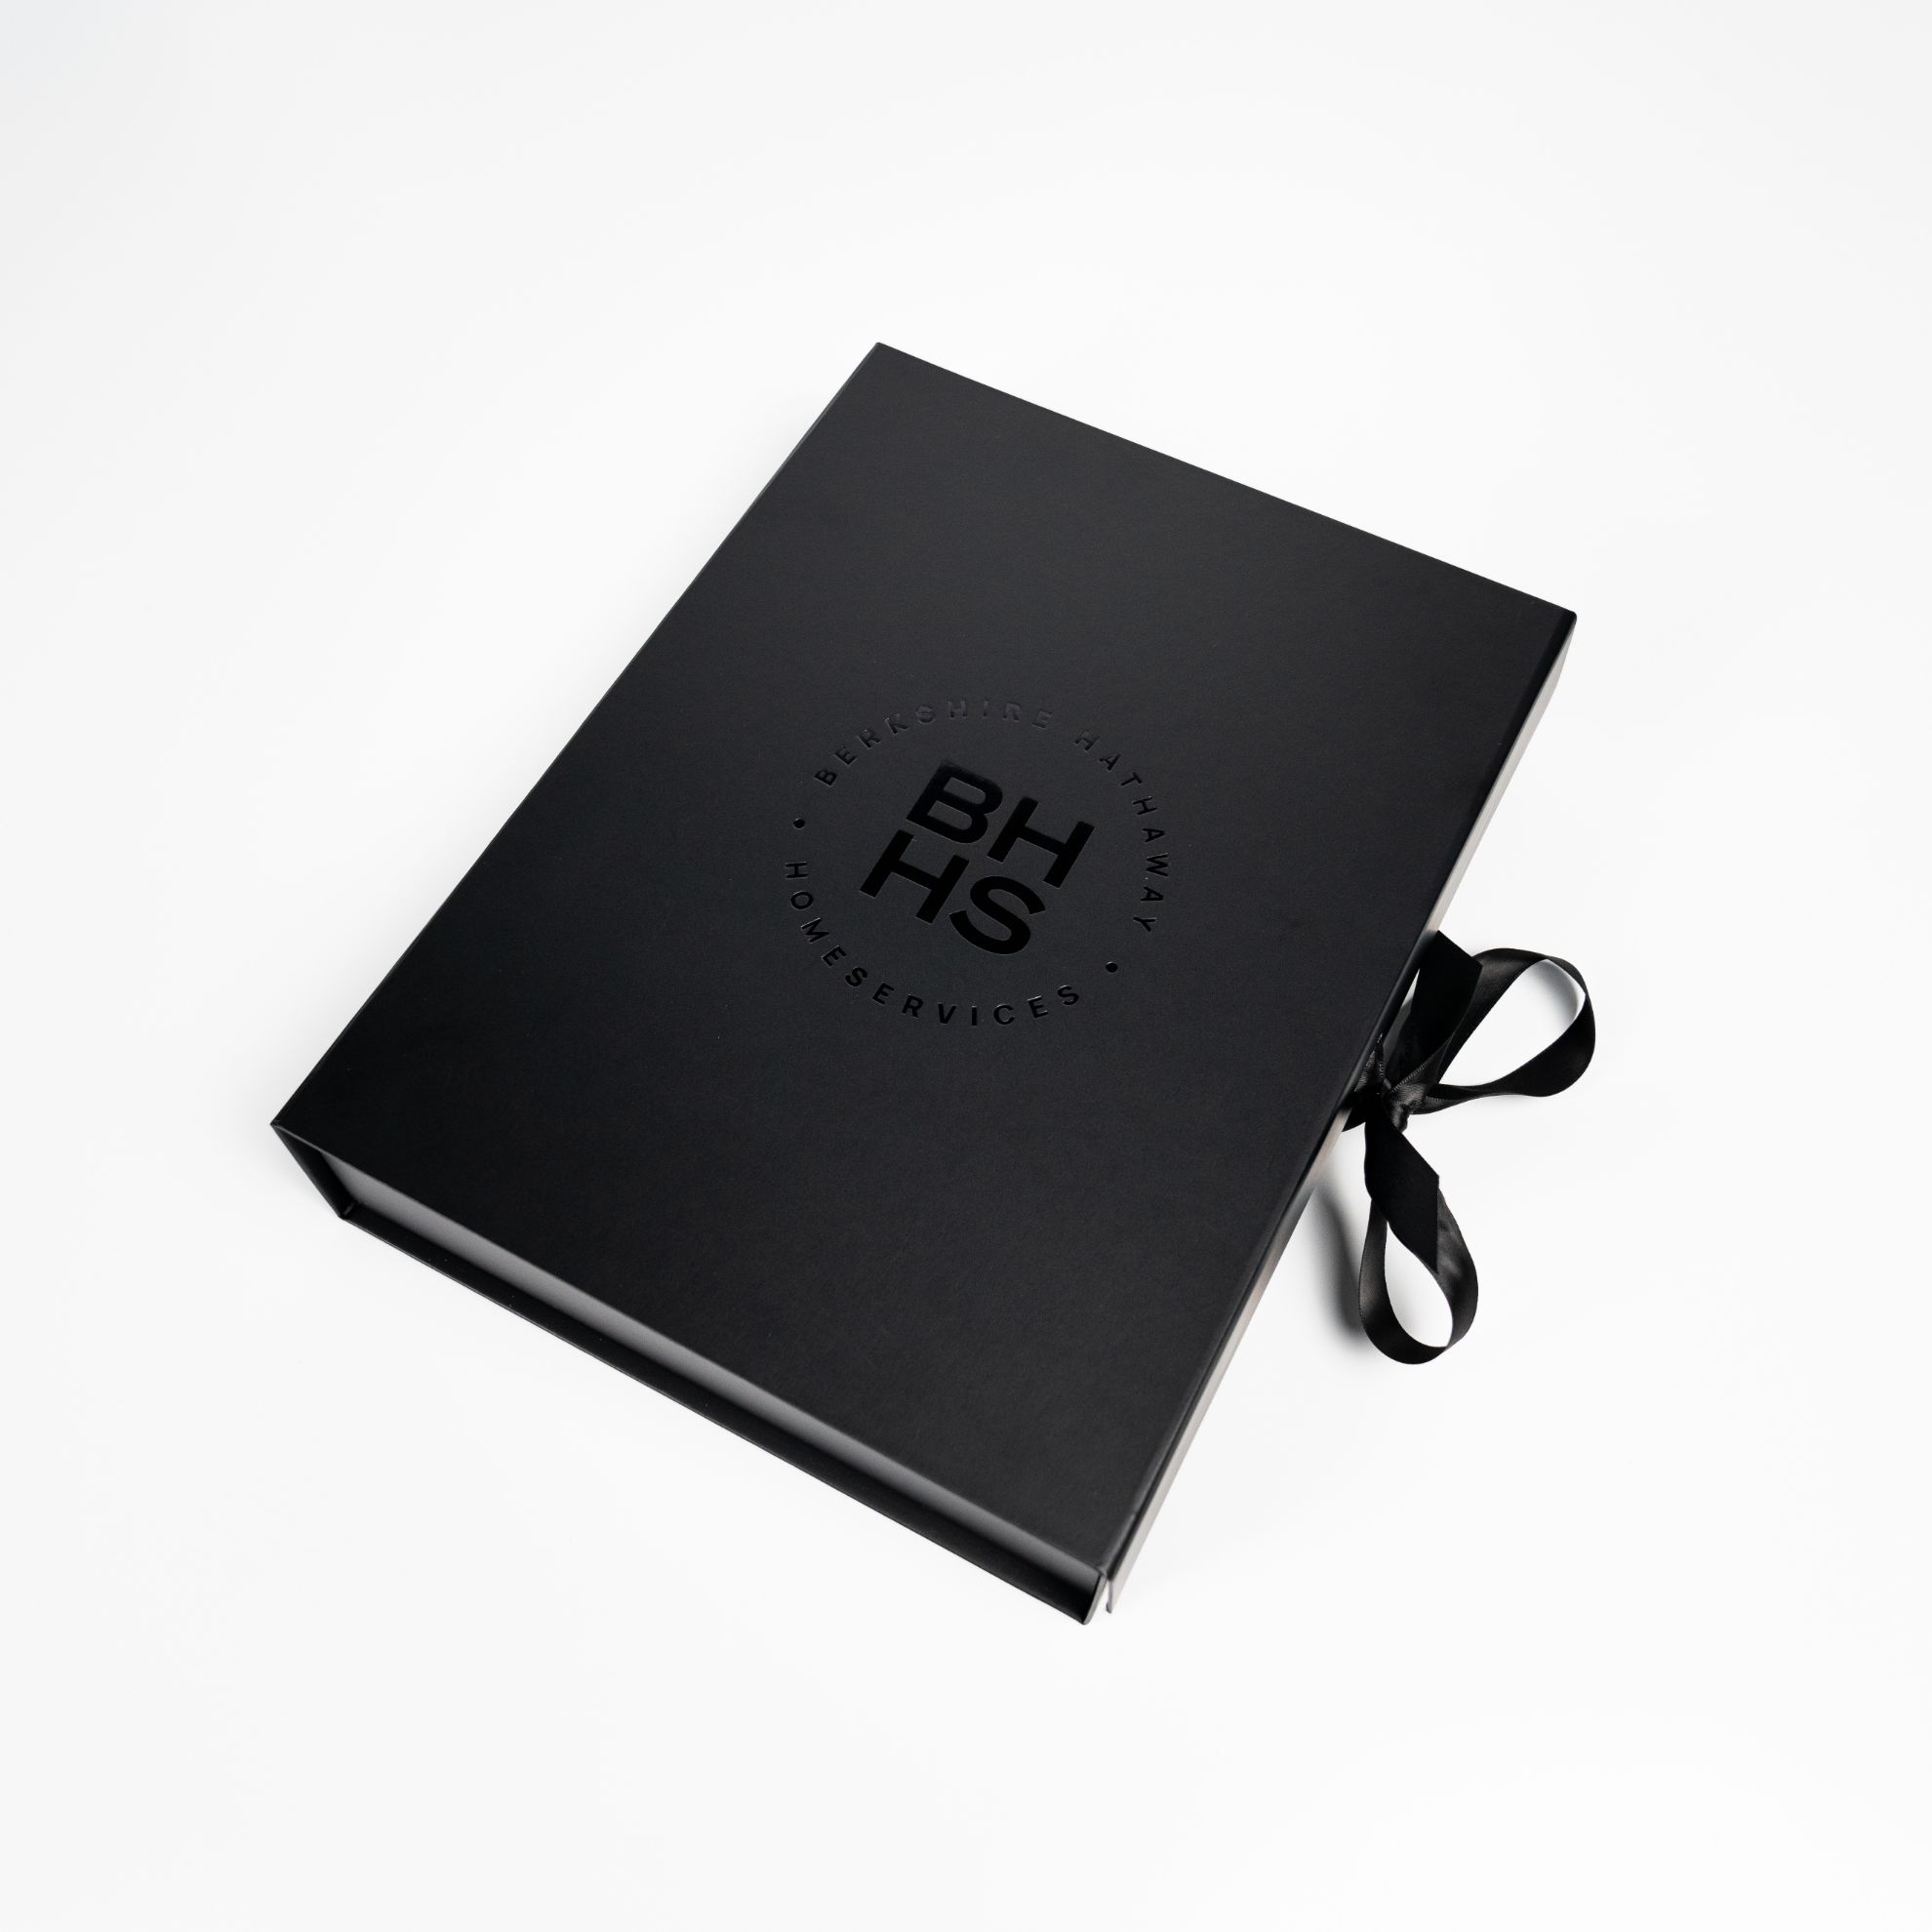 BHHS Listing Box